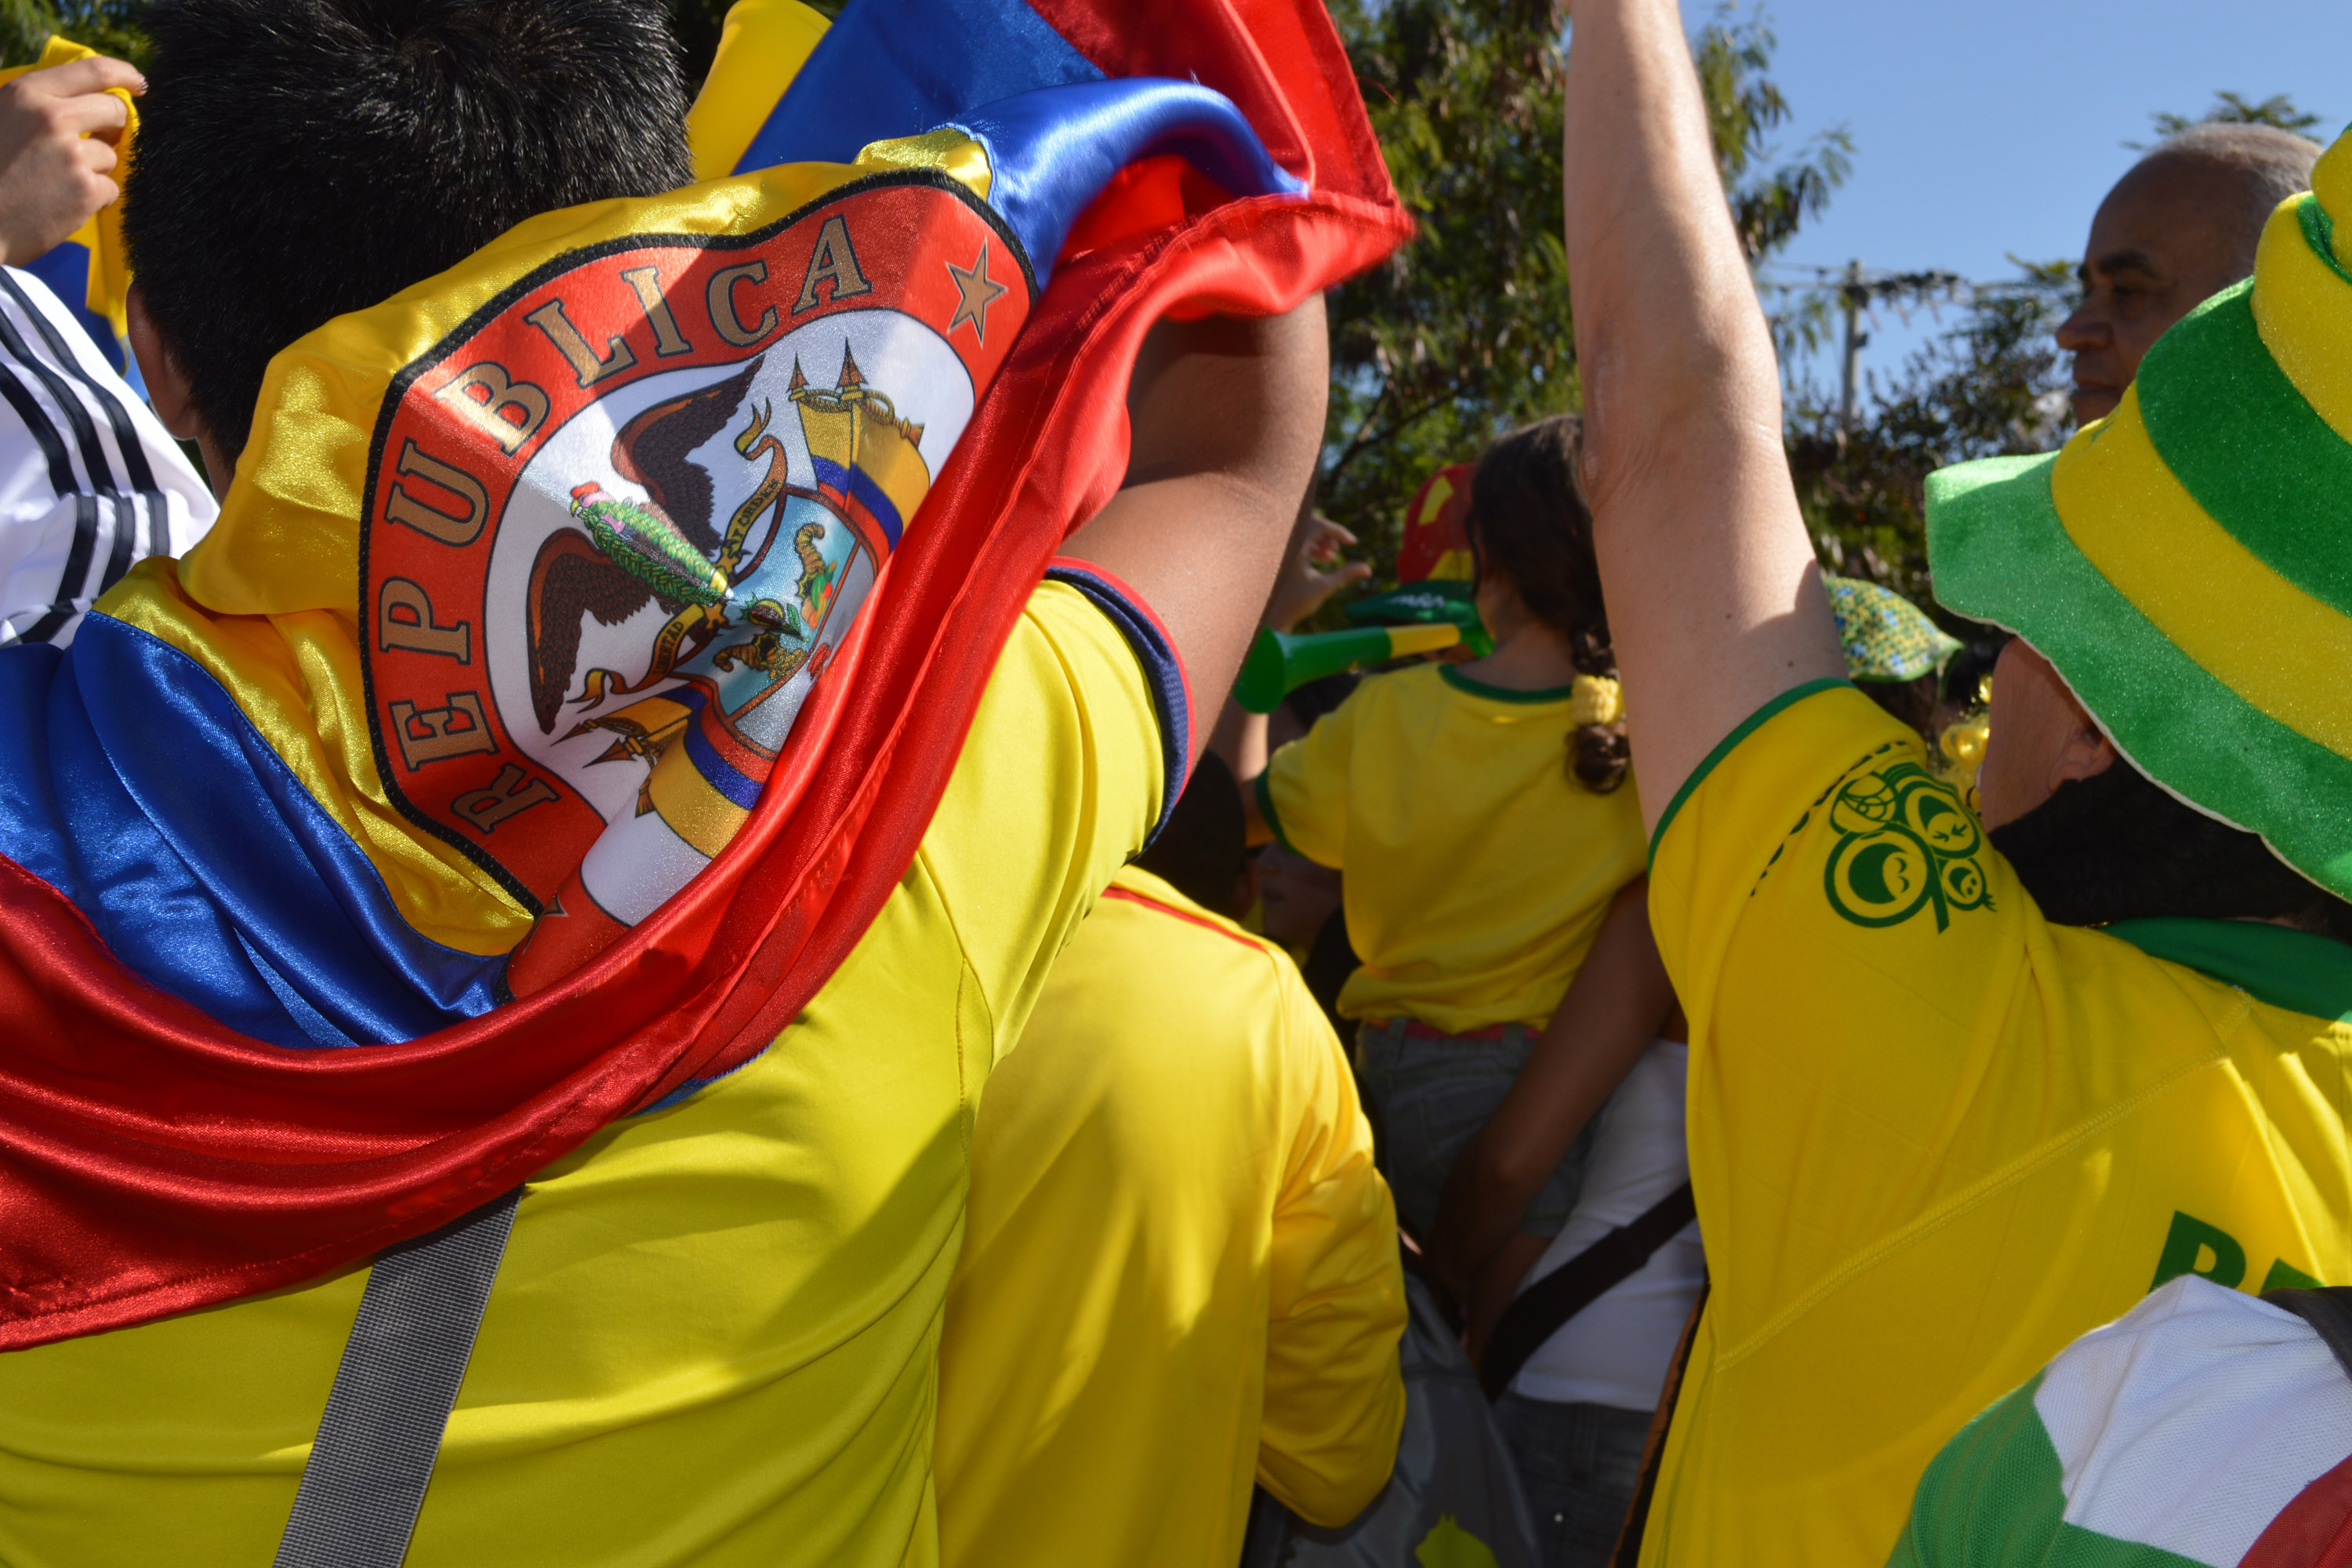 Inició la fiesta del fútbol en Suramérica, lo invitamos a que viva una Copa América llena de buenas emociones